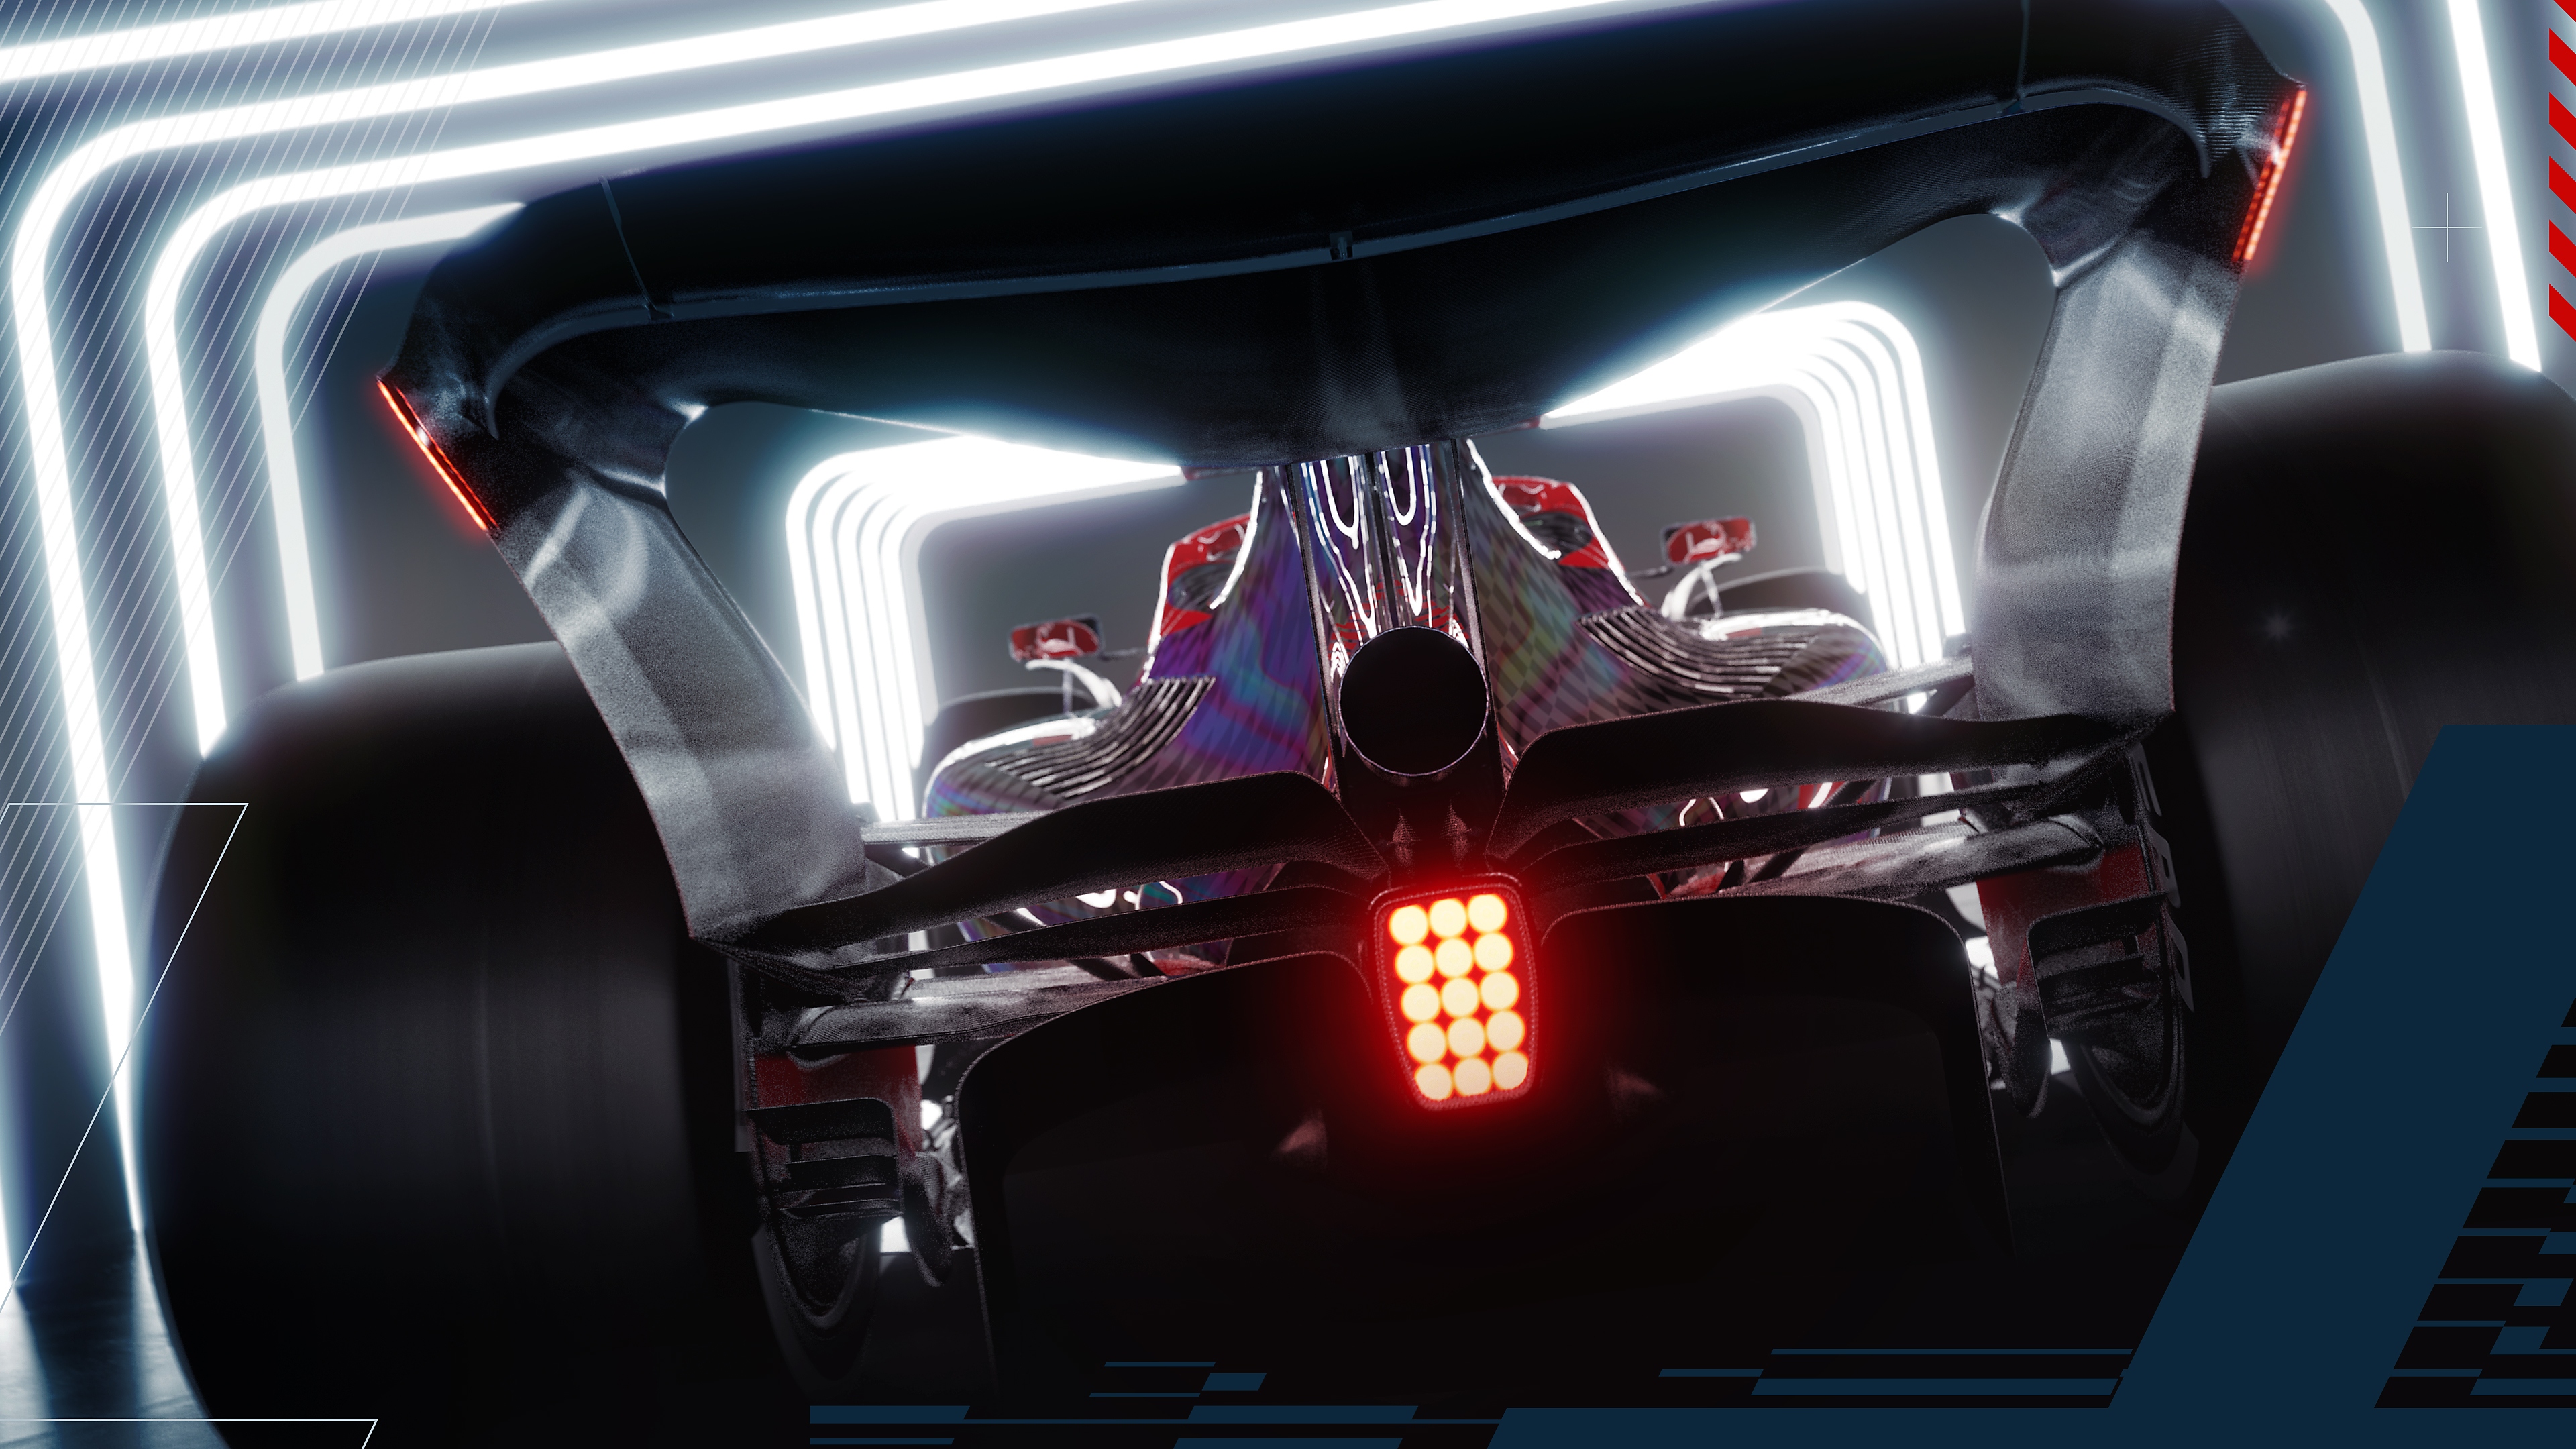 Zrzut ekranu z F1 22 przedstawiający bolid F1